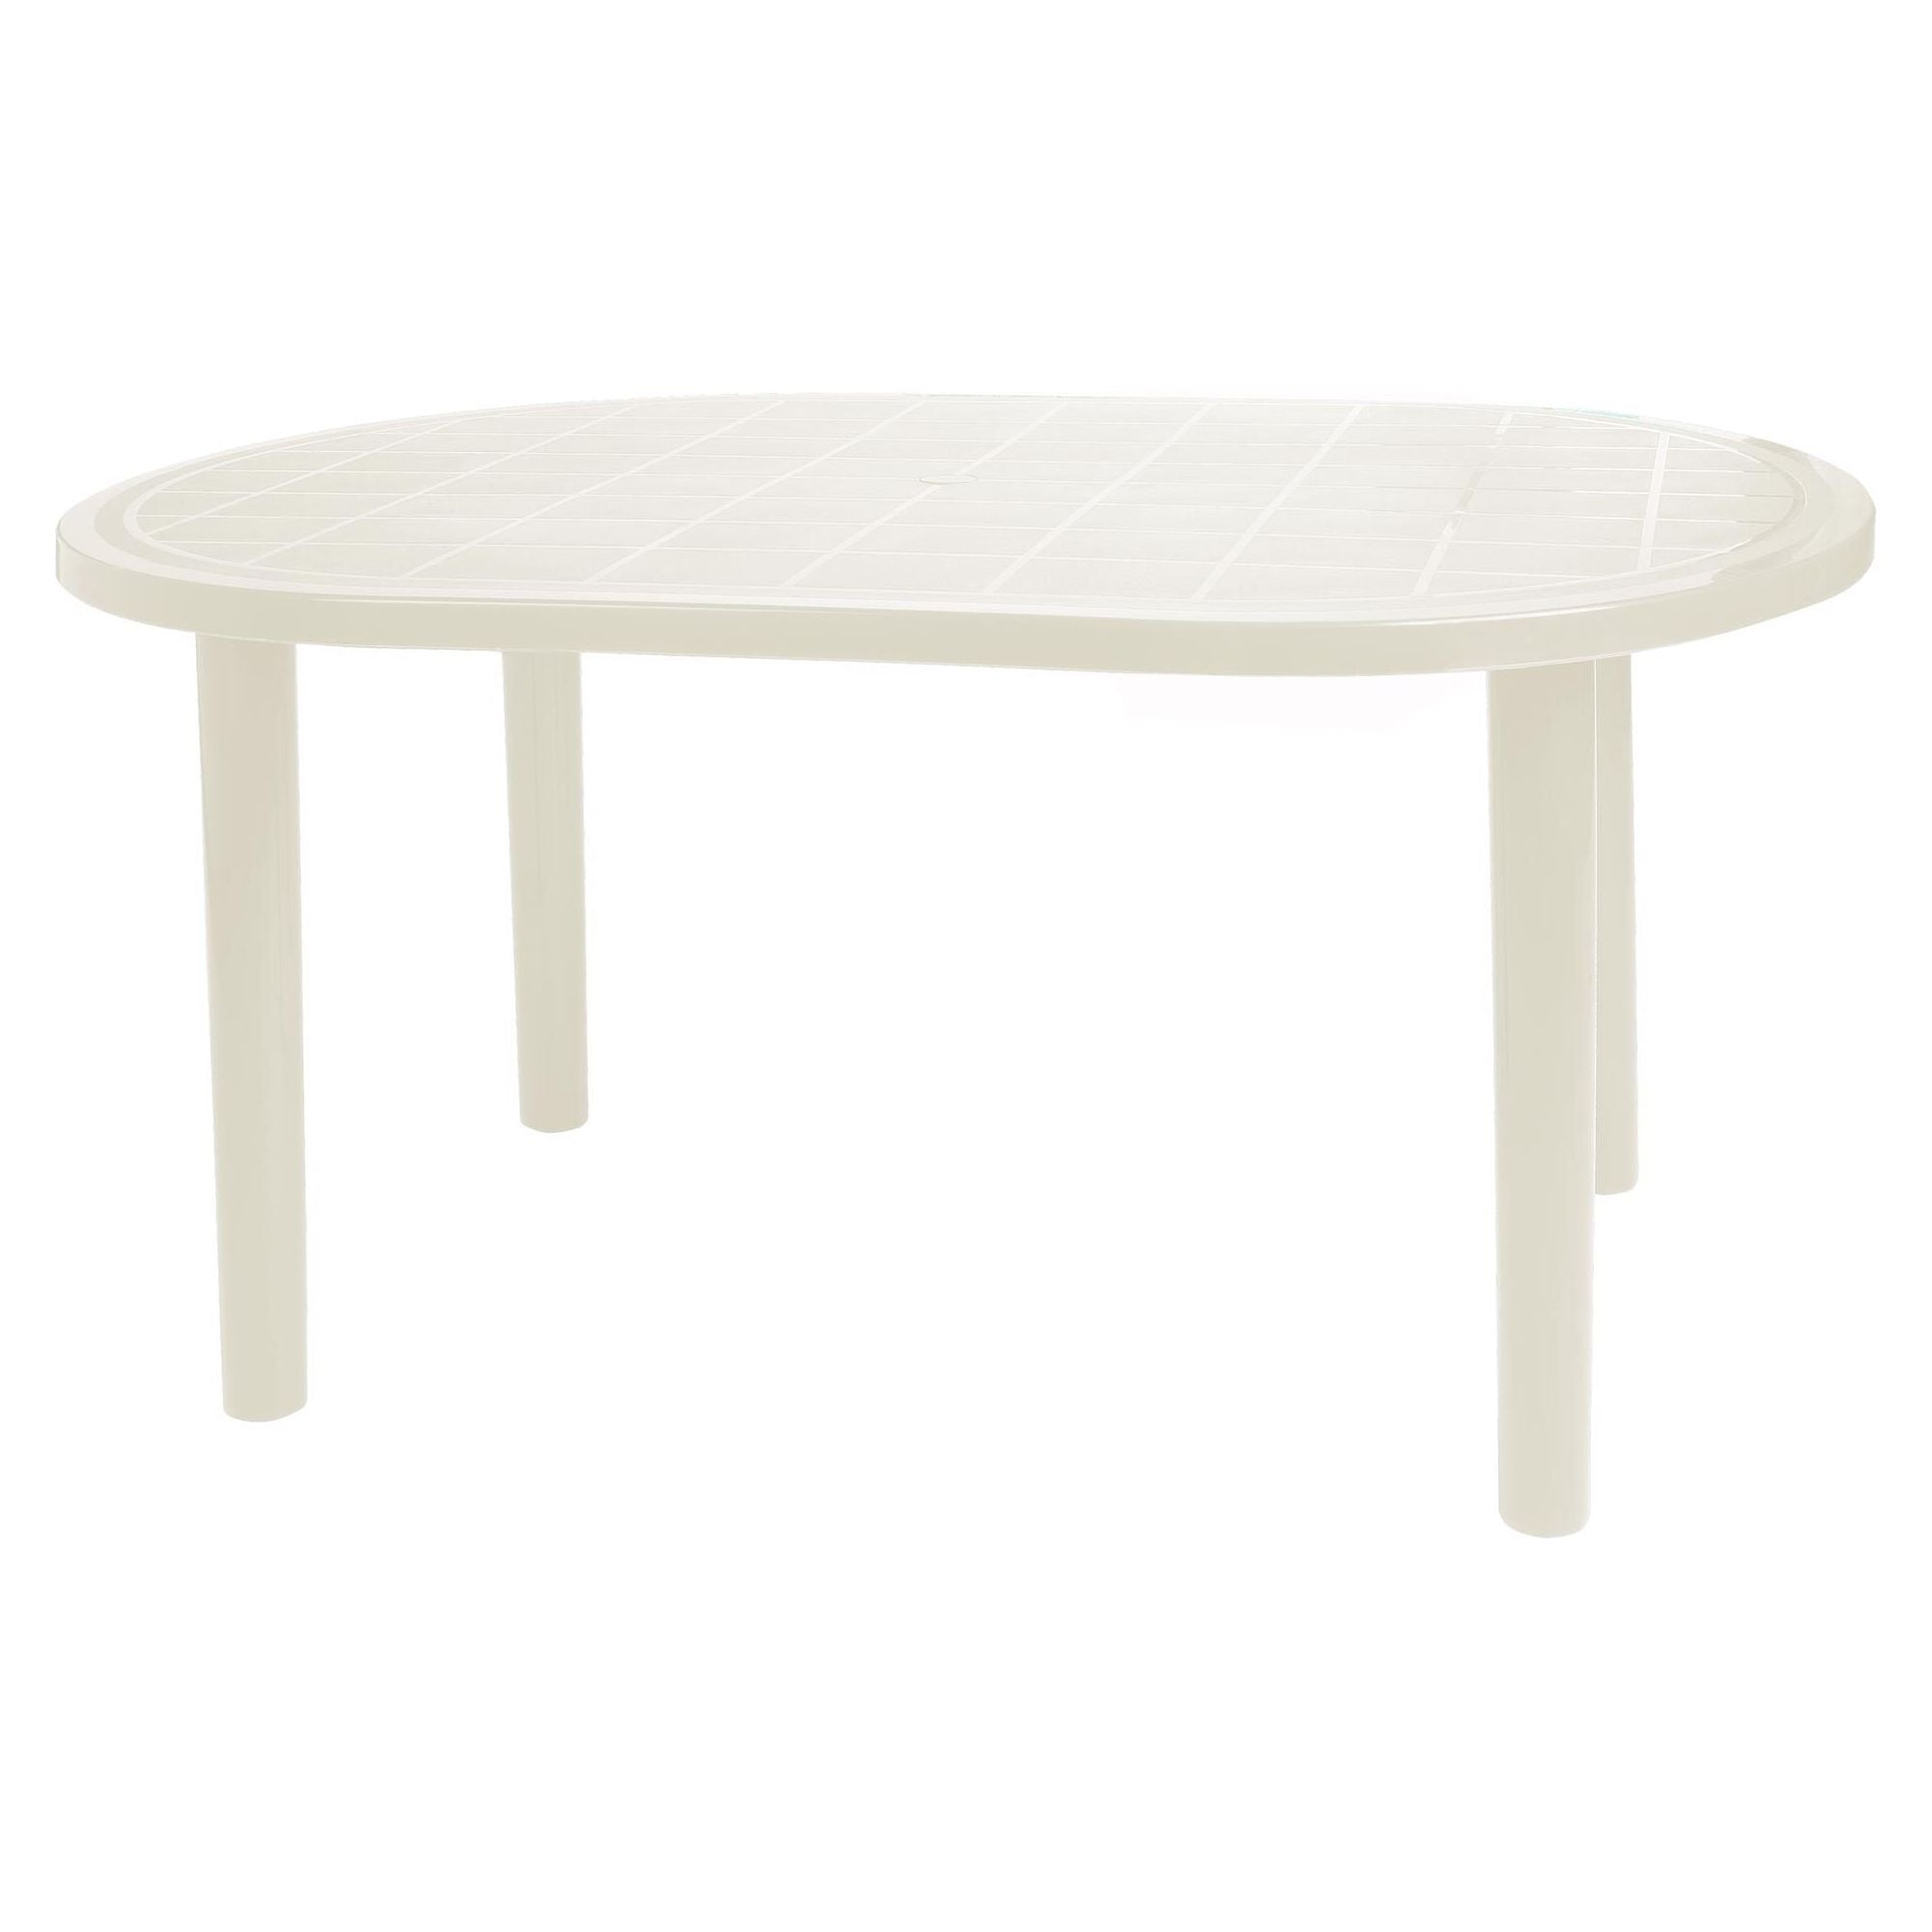 Garbar gala ovale tafel buiten 140x90 wit